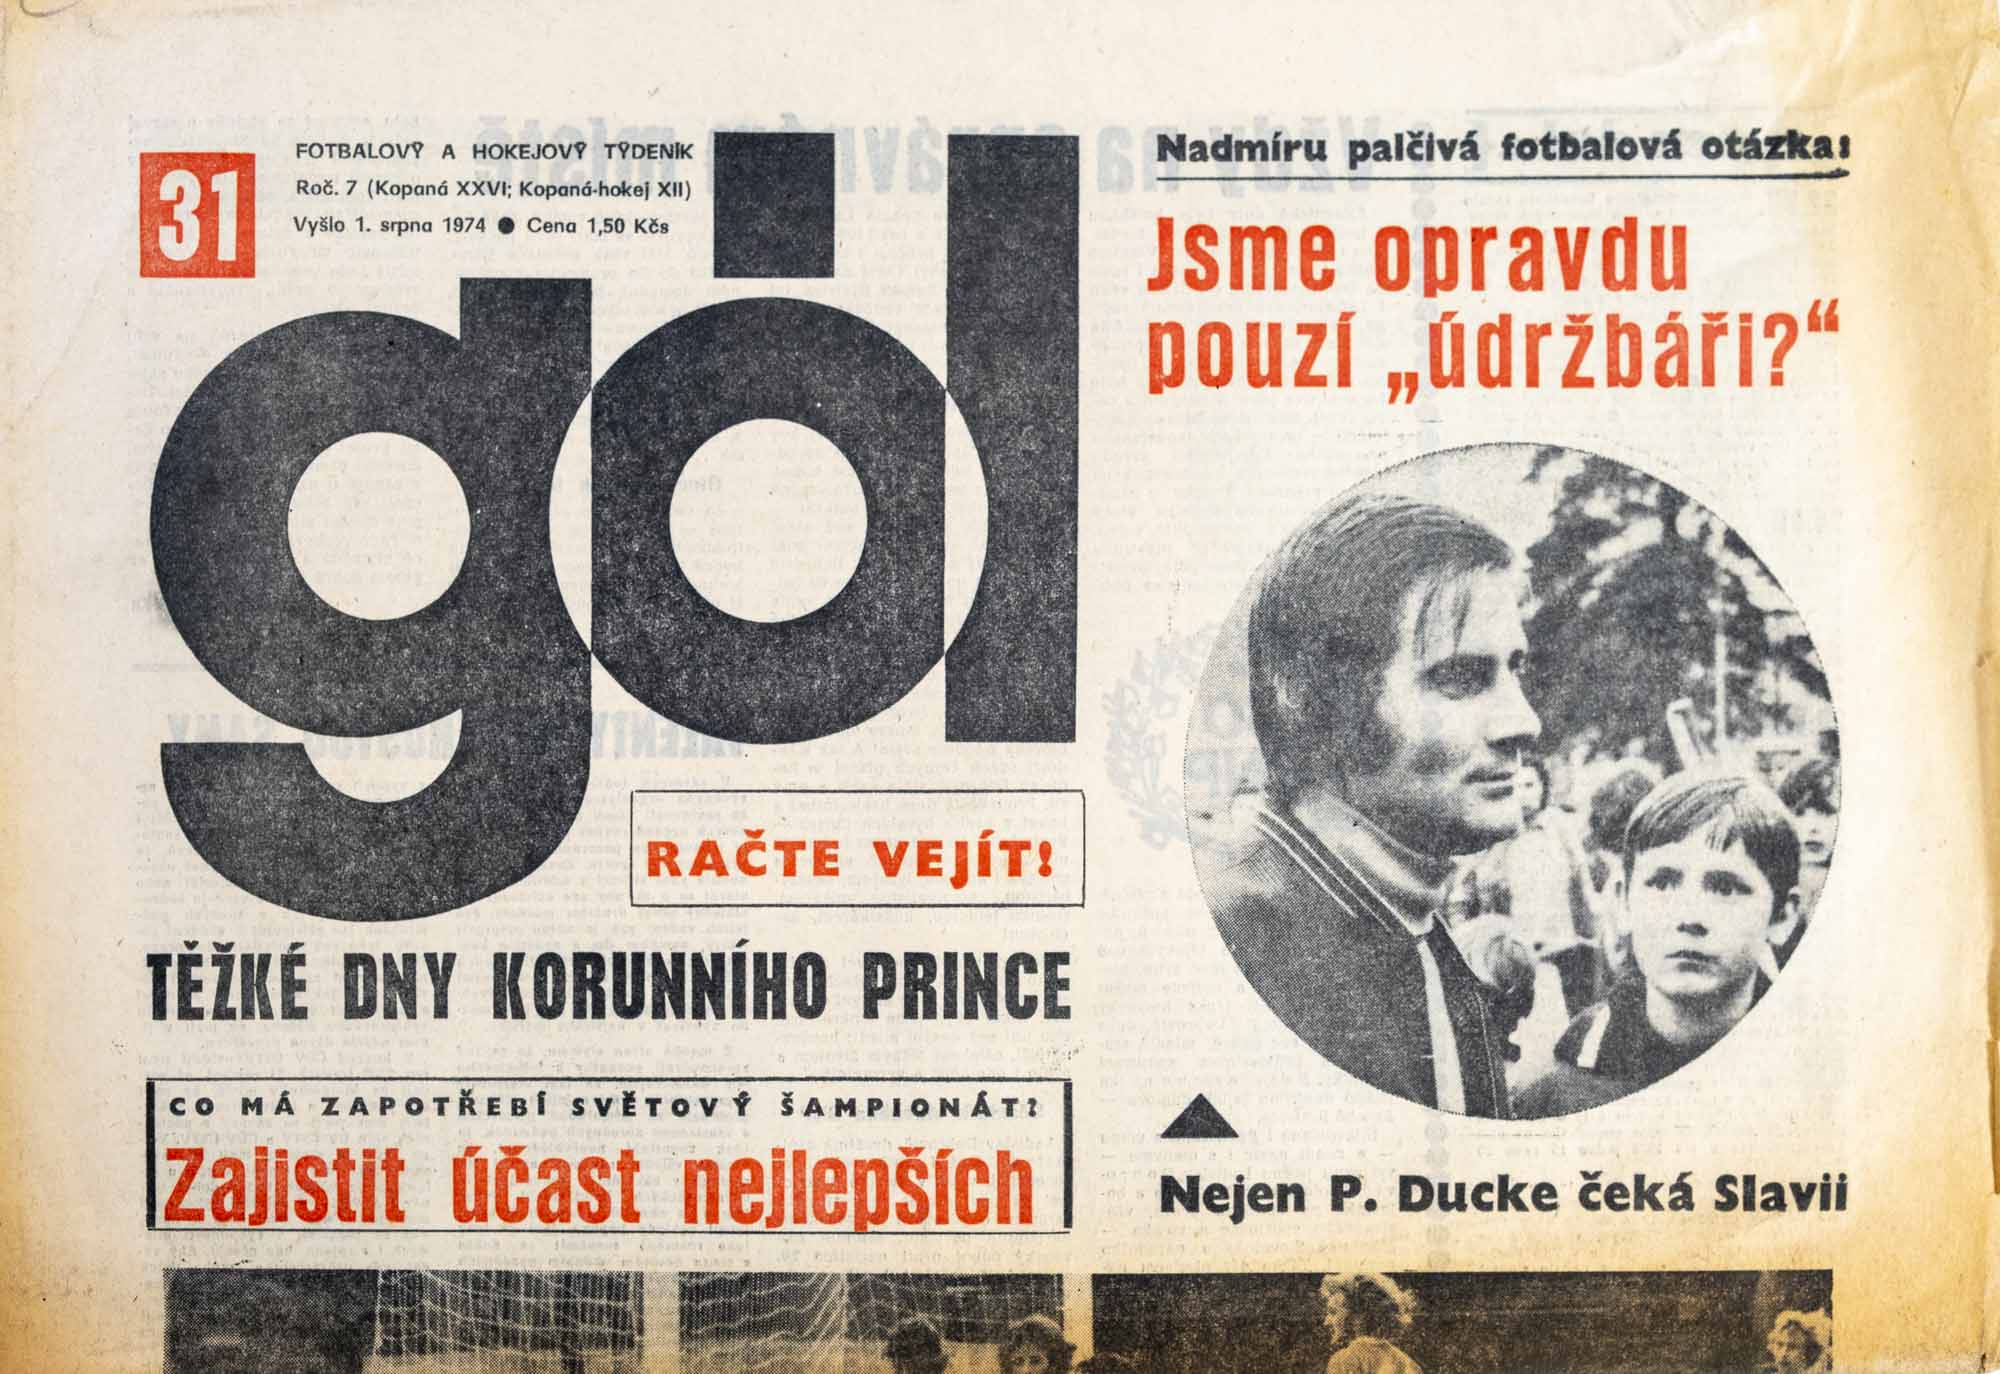 GÓL. Fotbalový a hokejový týdeník, 7/26/12/1974 č. 31